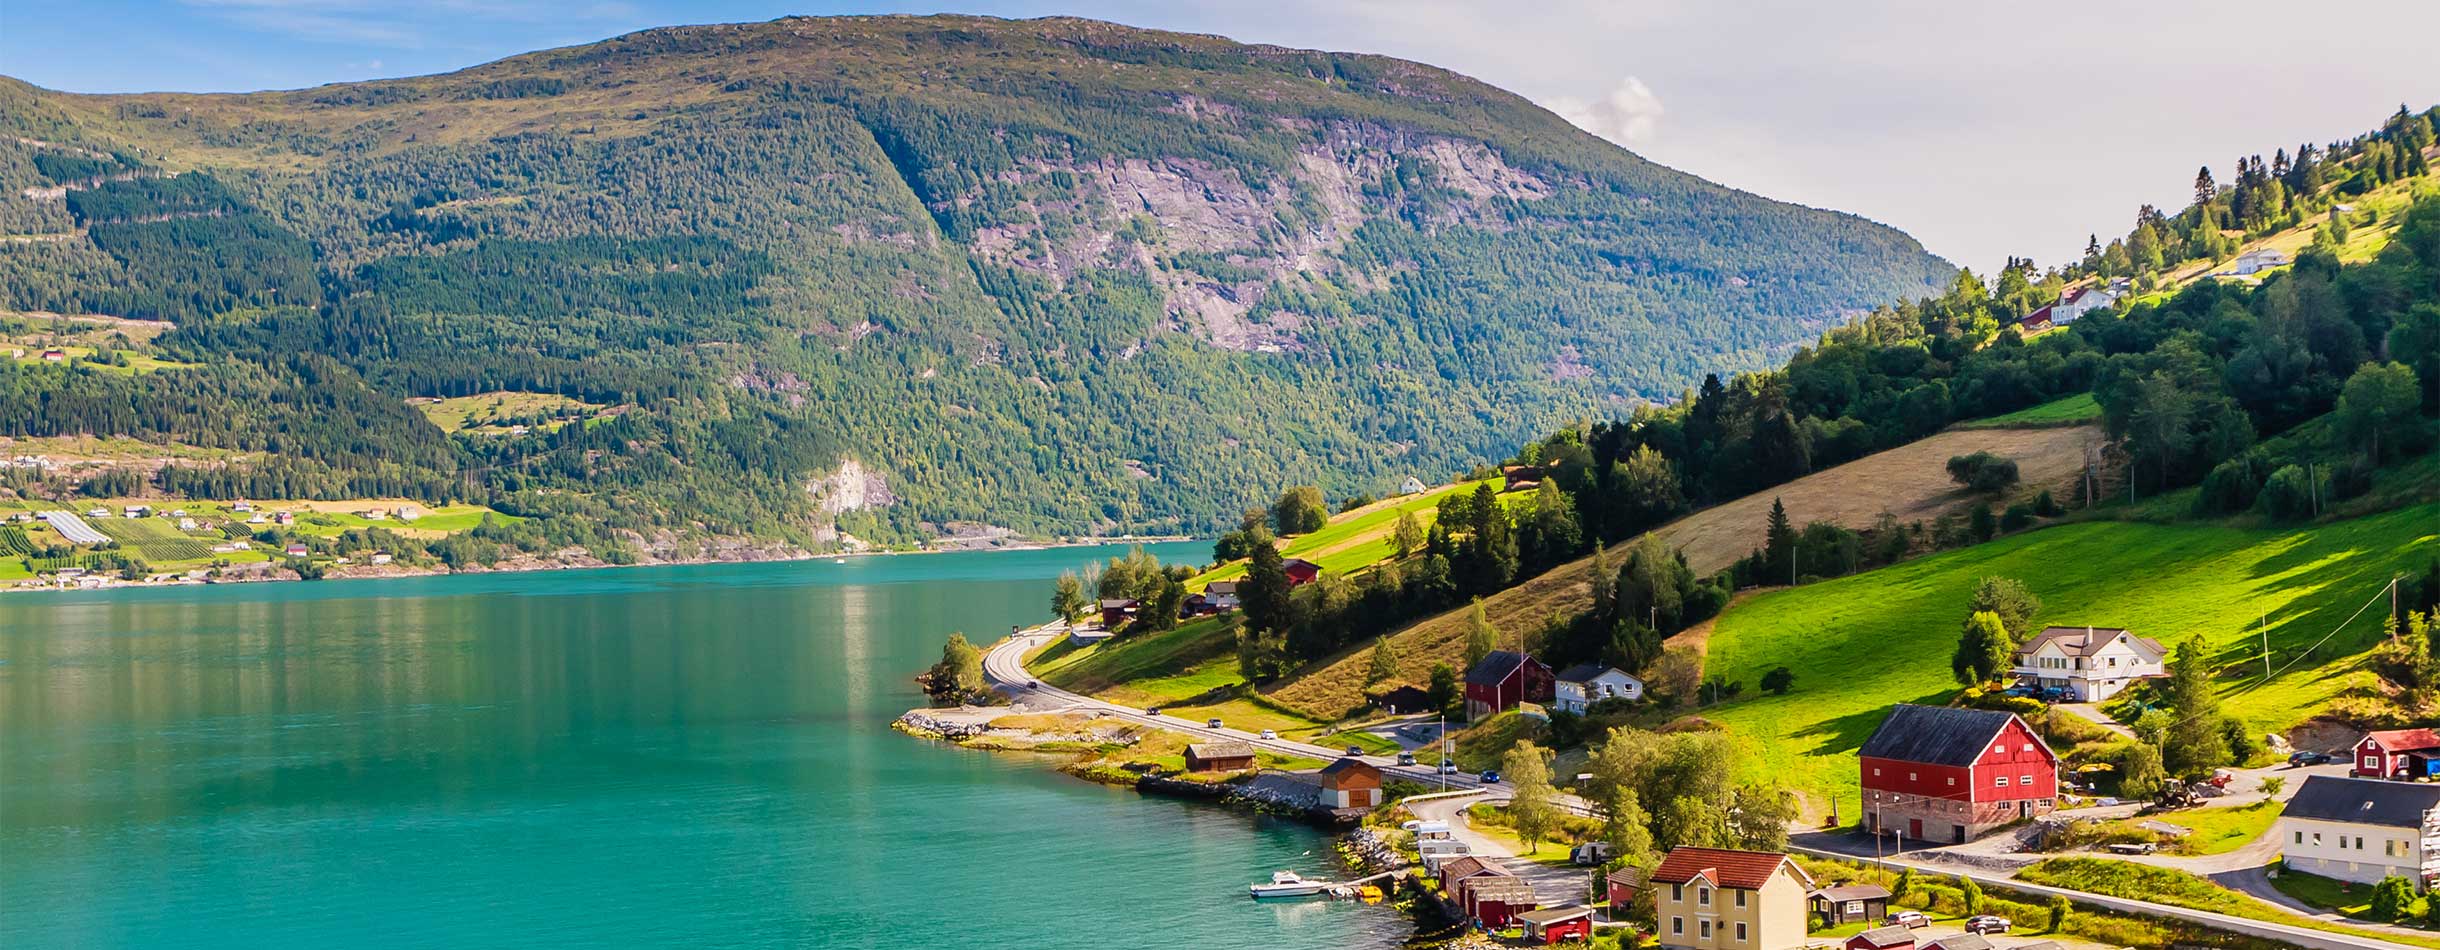 Olden, Norway